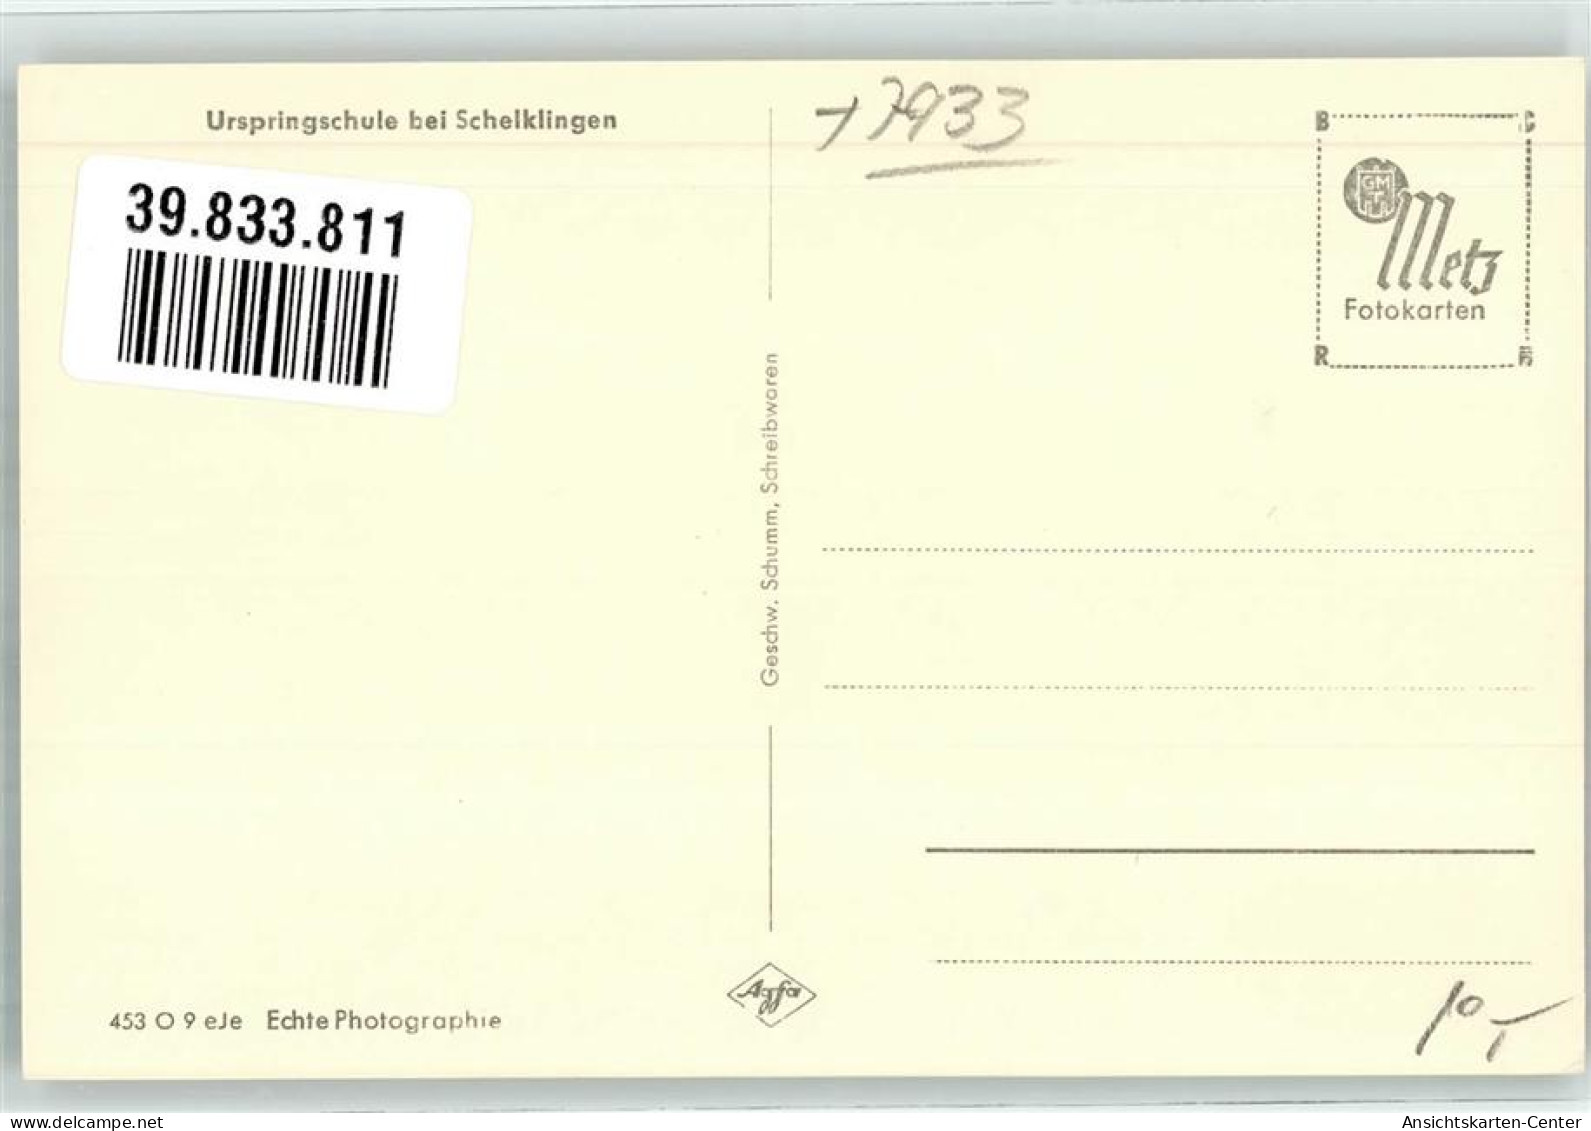 39833811 - Schelklingen - Schelklingen